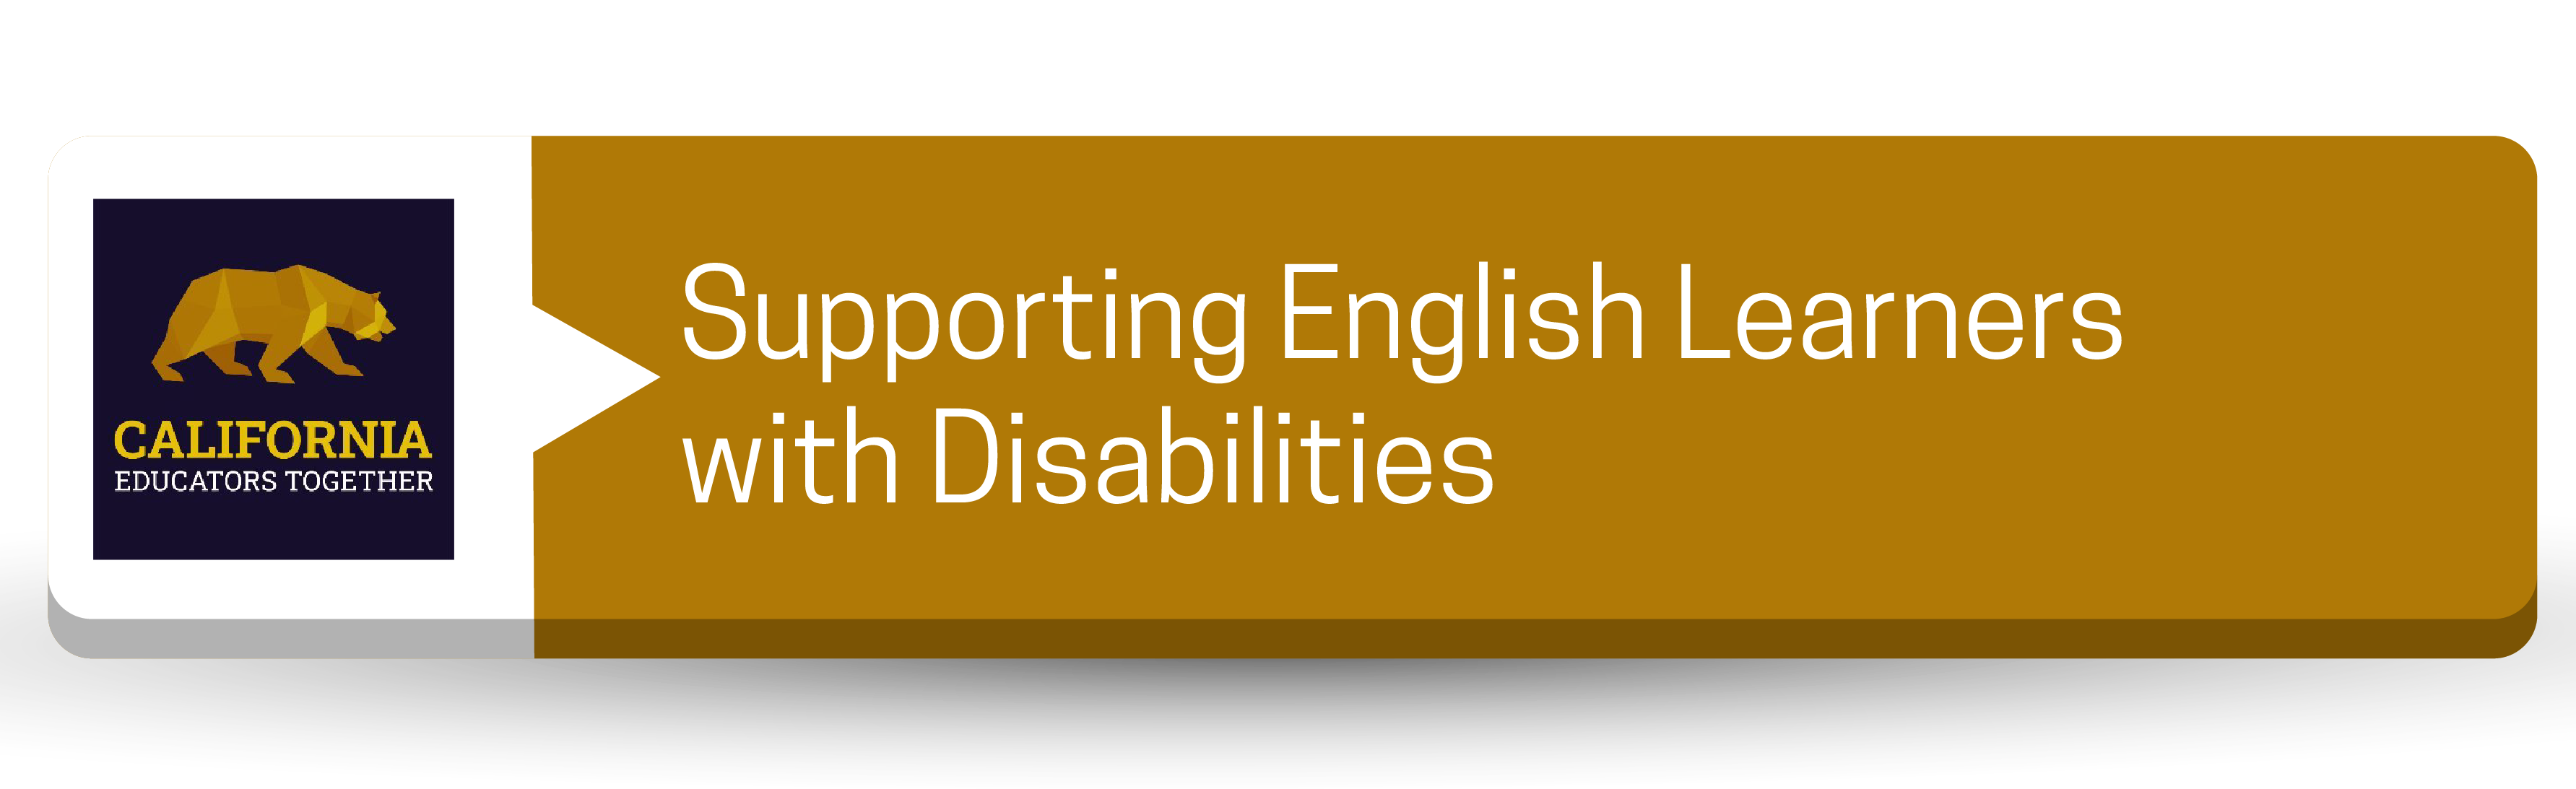 Apoyando a los estudiantes de inglés con discapacidades - Botón de recursos para profesionales (educadores de CA juntos)